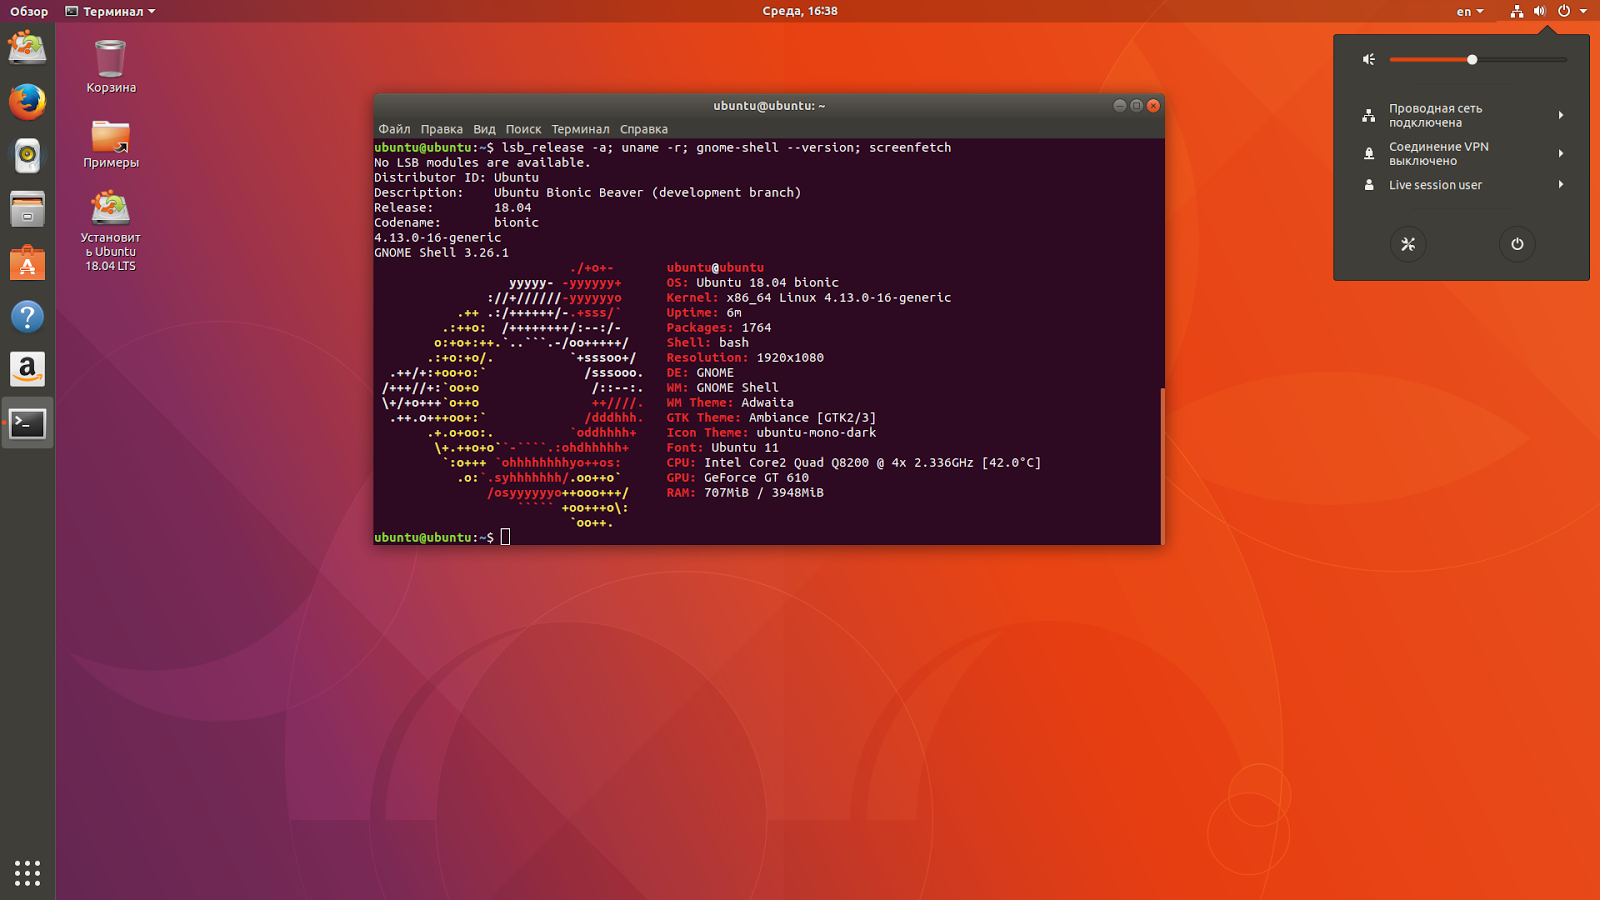 Версия linux команда. Ubuntu 18.04 LTS. Линукс убунту 18.04. ОС Ubuntu 18. Операционная система Ubuntu Linux Server 18.04.